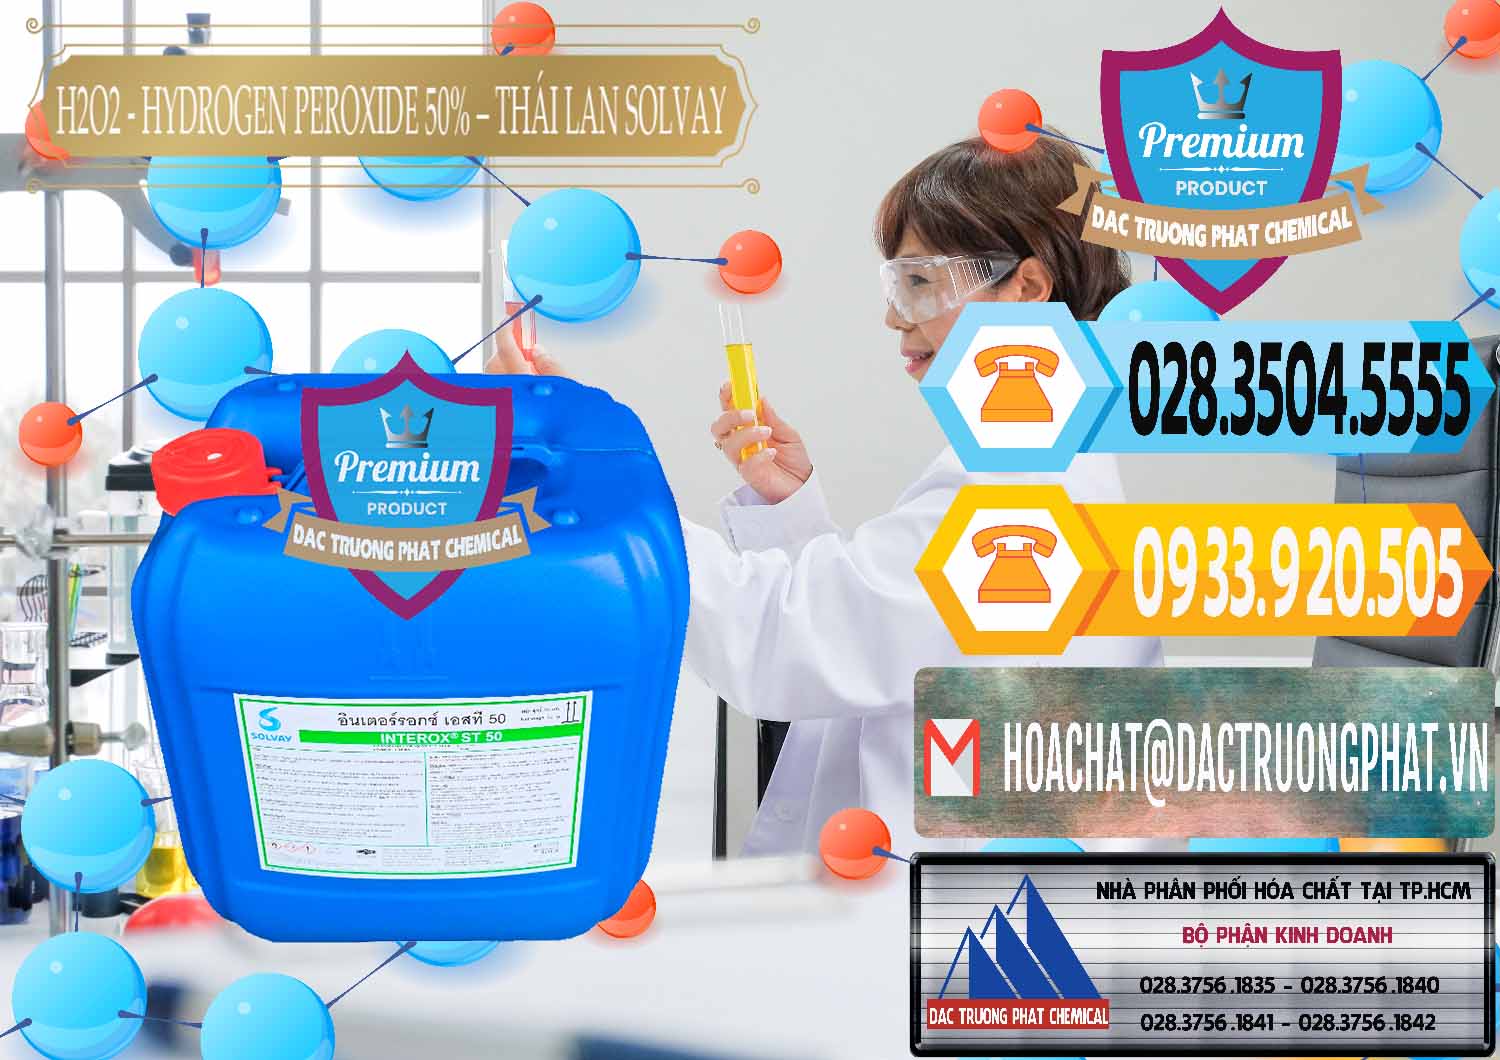 Nơi cung cấp - bán H2O2 - Hydrogen Peroxide 50% Thái Lan Solvay - 0068 - Đơn vị nhập khẩu - phân phối hóa chất tại TP.HCM - hoachattayrua.net